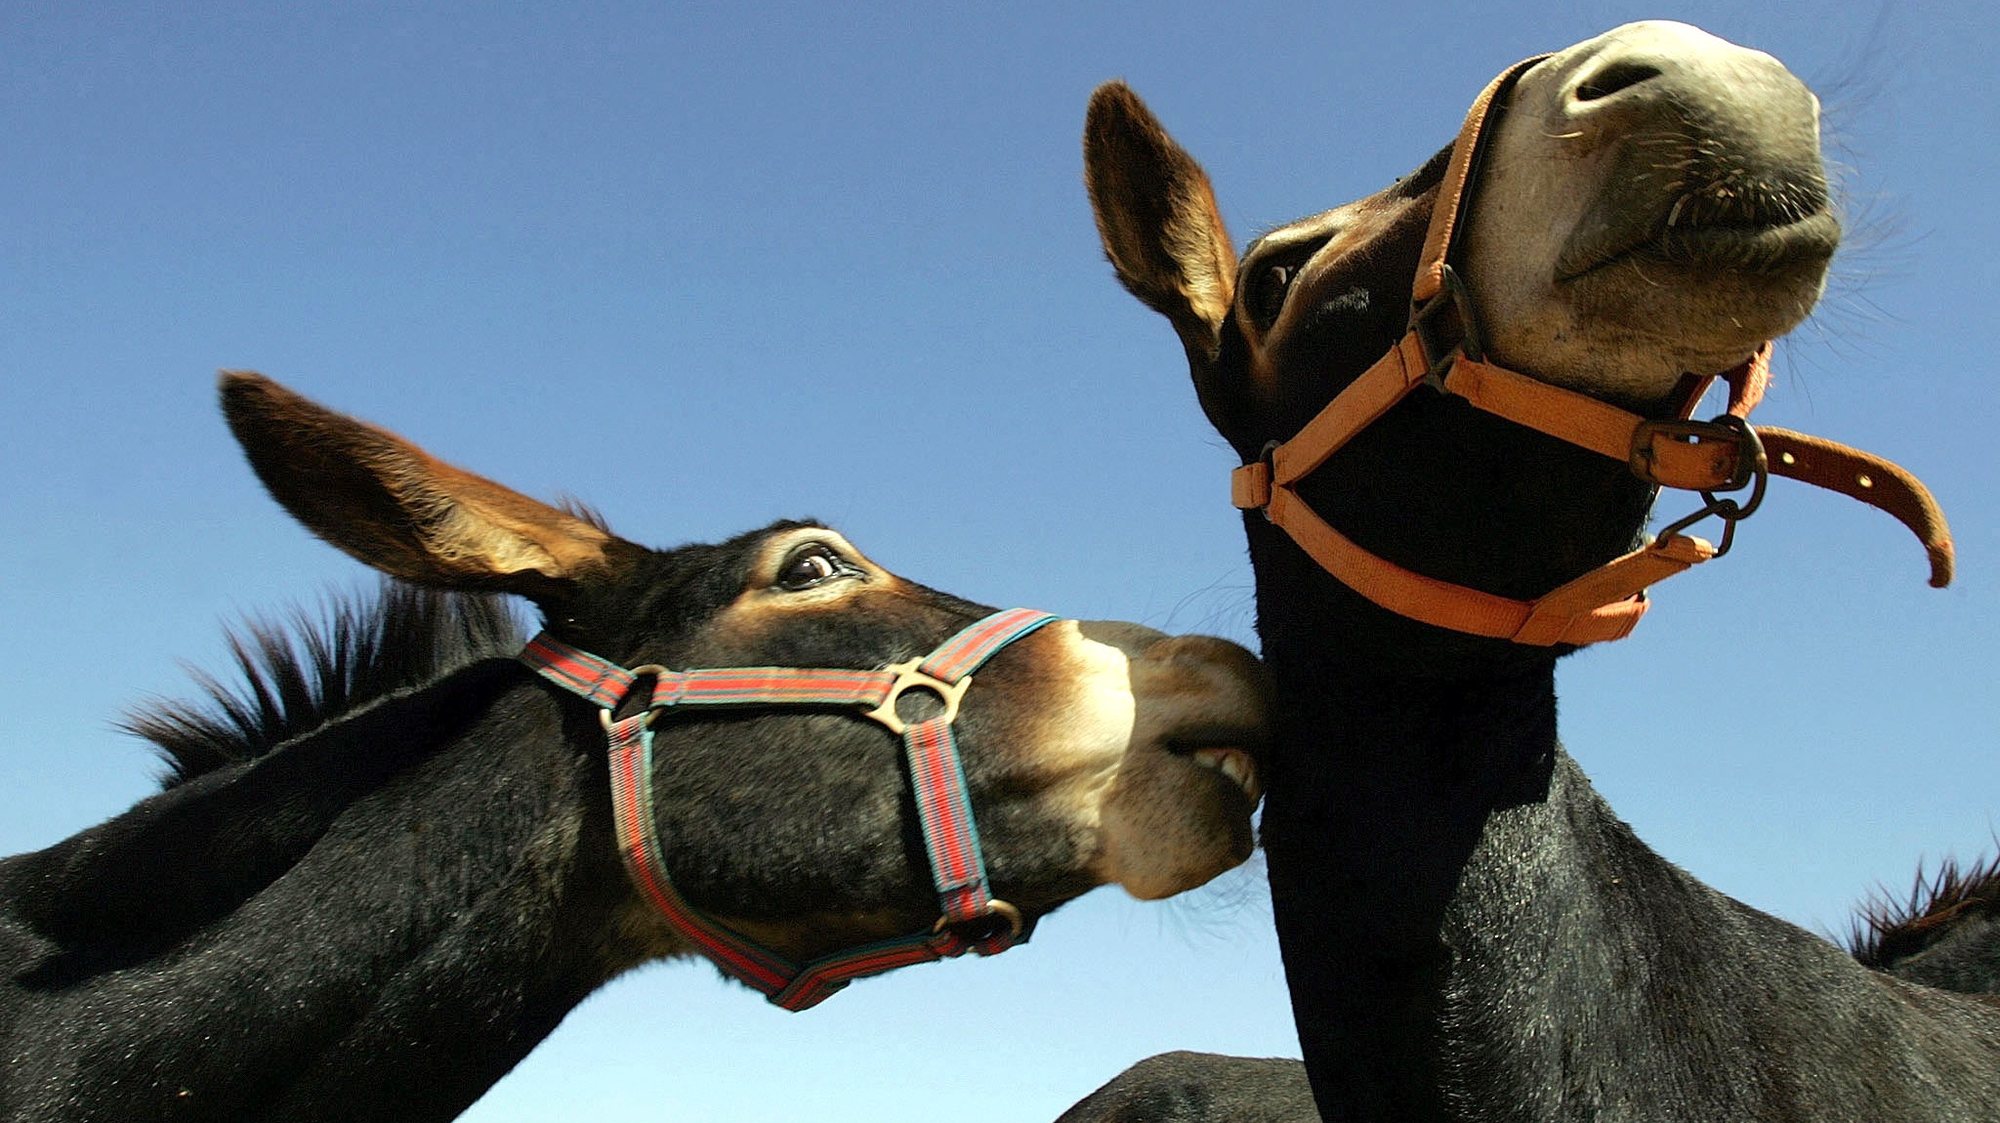 FAR0120050910:ESTOMBAR: 2 dos burros alojados no REFUGIO DOS BURROS associação criada por um casal de ingleses no barlavento algarvio para a protecçao e procriaçao da especie.
FOTO: VIRGILIO RODRIGUES/LUSA